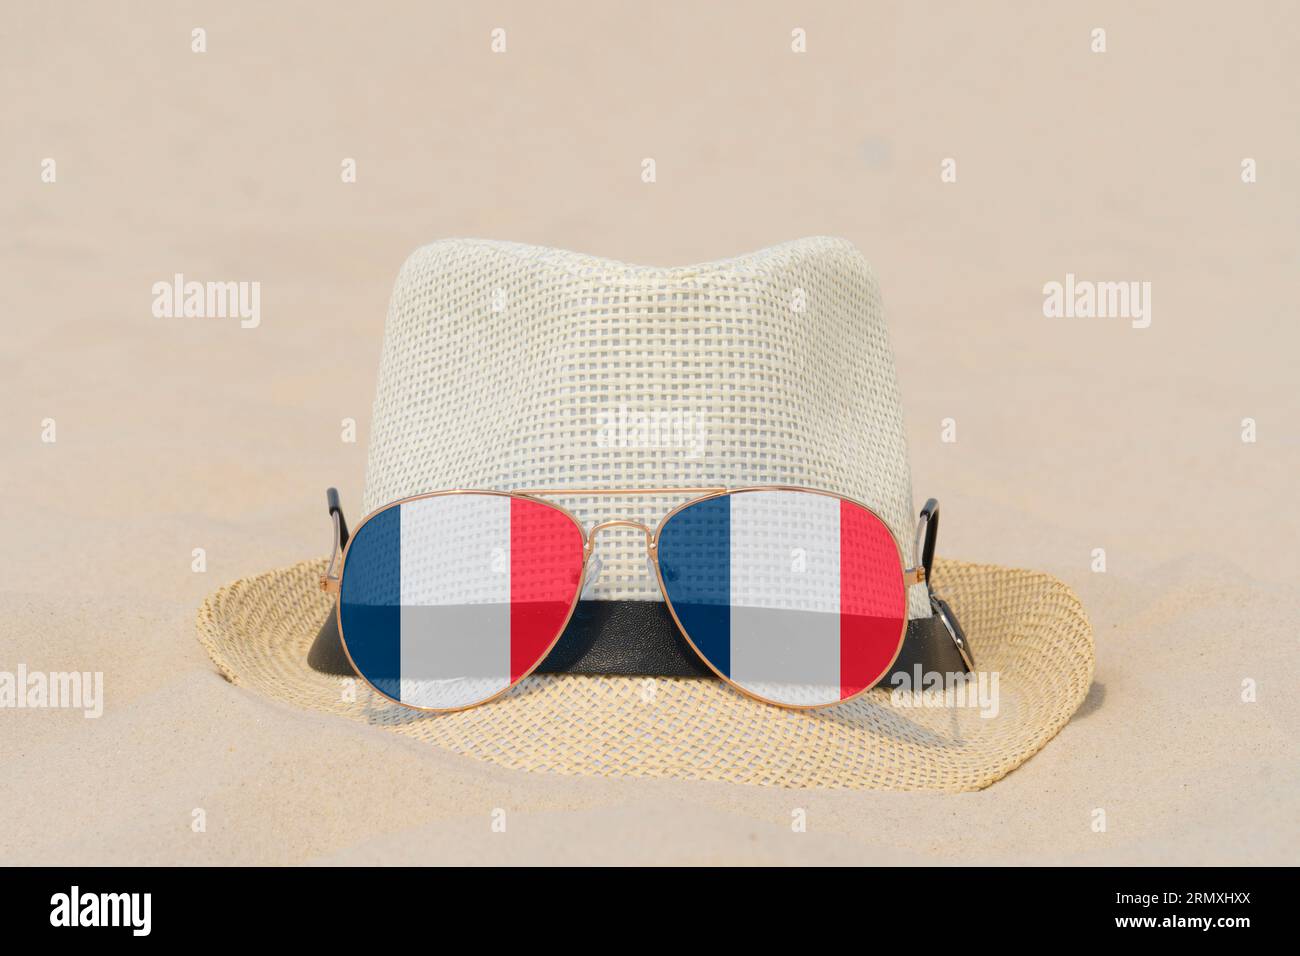 Sonnenbrille mit Gläsern in Form einer französischen Flagge und einem Hut liegen auf Sand. Konzept der Sommerferien und Reisen in Frankreich. Sommerruhe. Weihnachtszeit Stockfoto